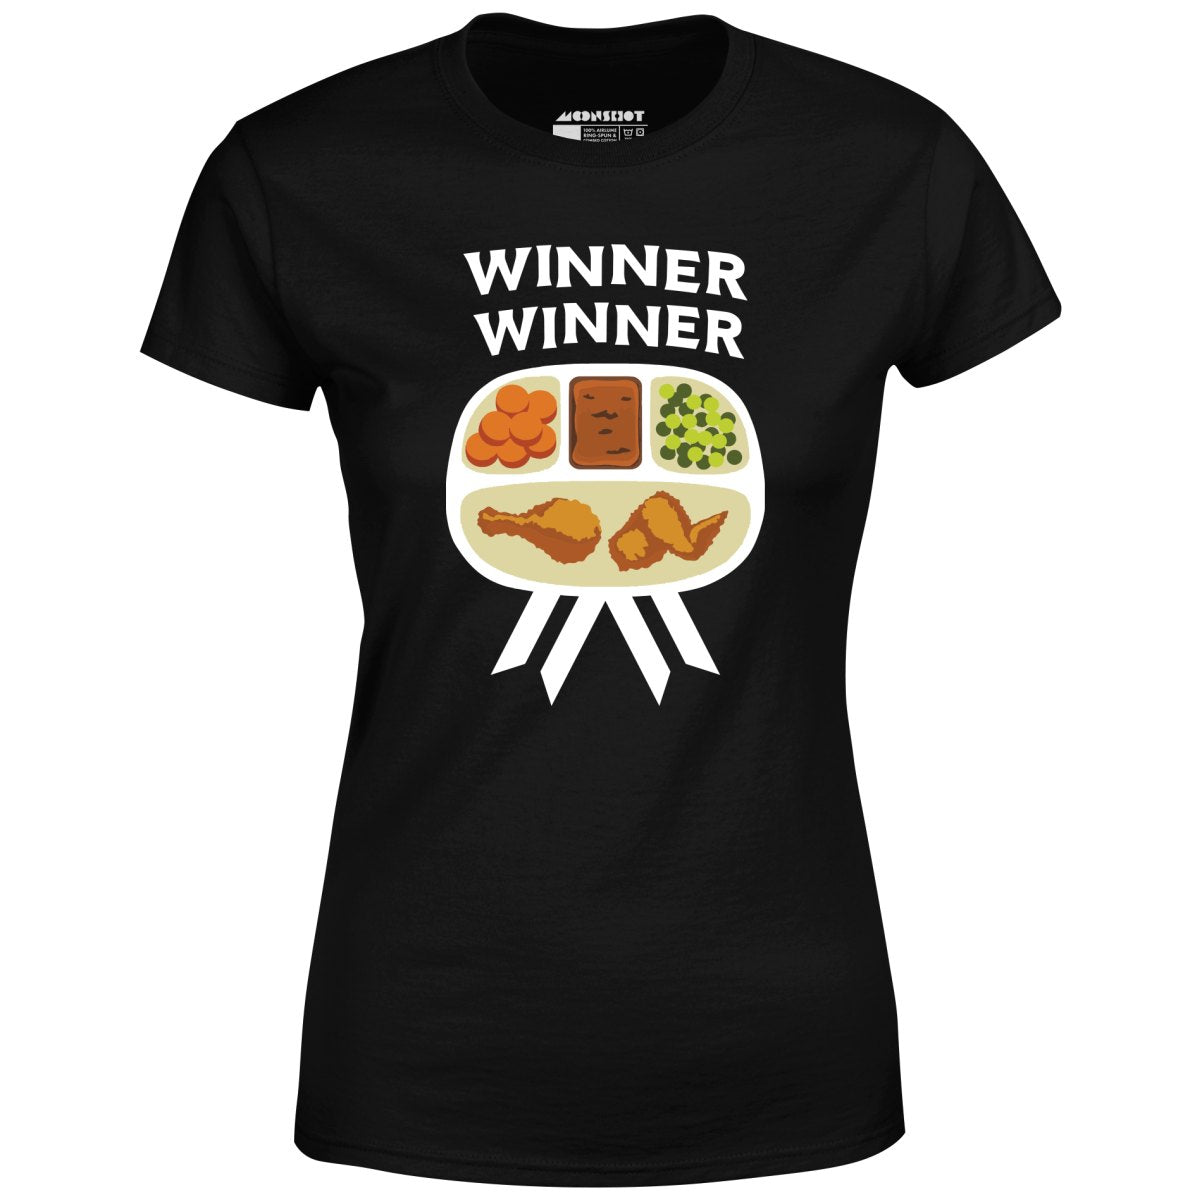 Winner Winner Chicken Dinner - Women's T-Shirt